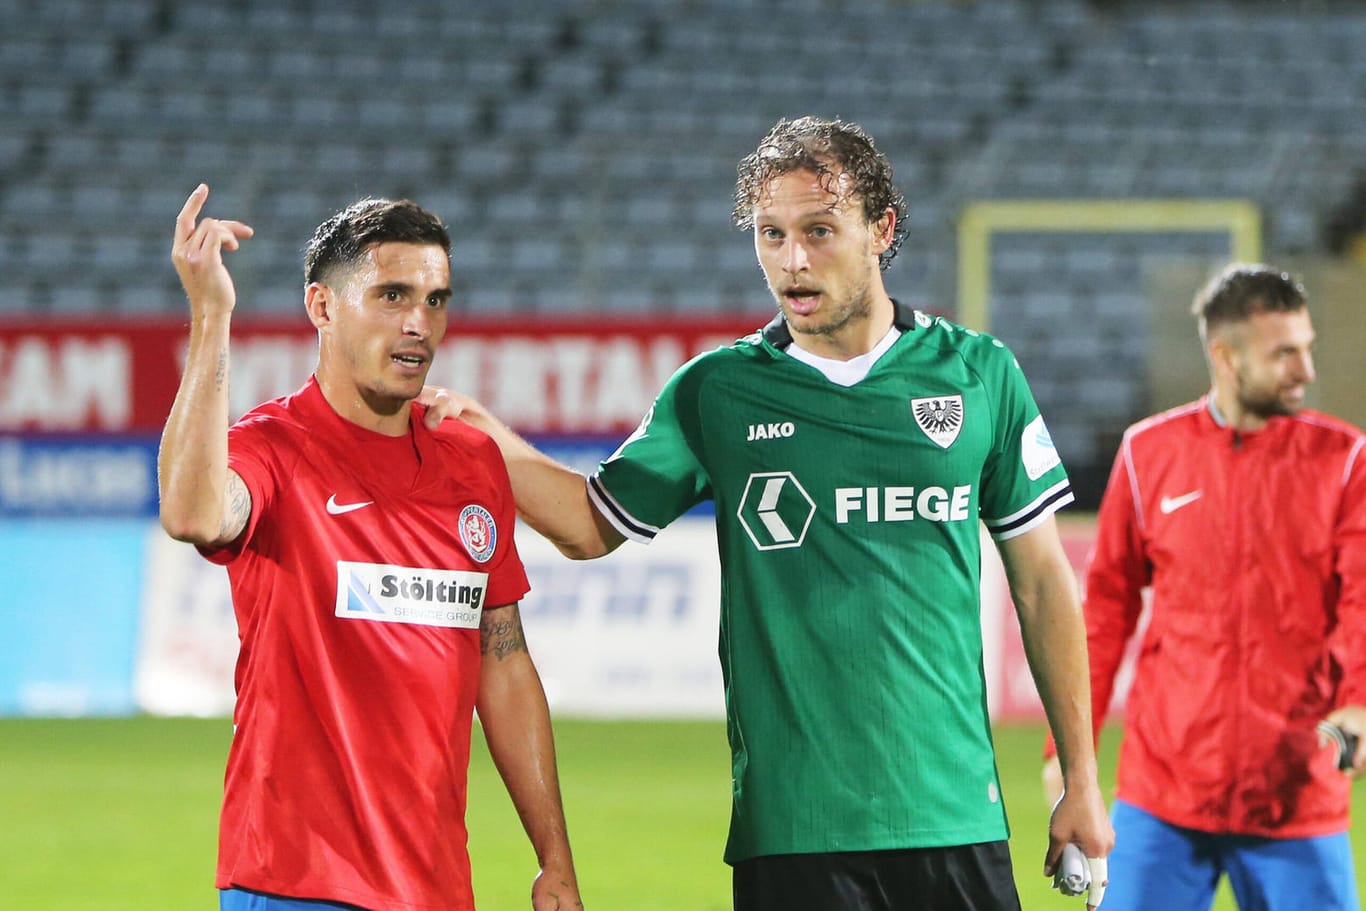 Daniel Grebe vom Wuppertaler SV redet mit Julian Schauerte von Preußen Münster nach dem Spiel: Beide Teams schossen jeweils ein Tor.